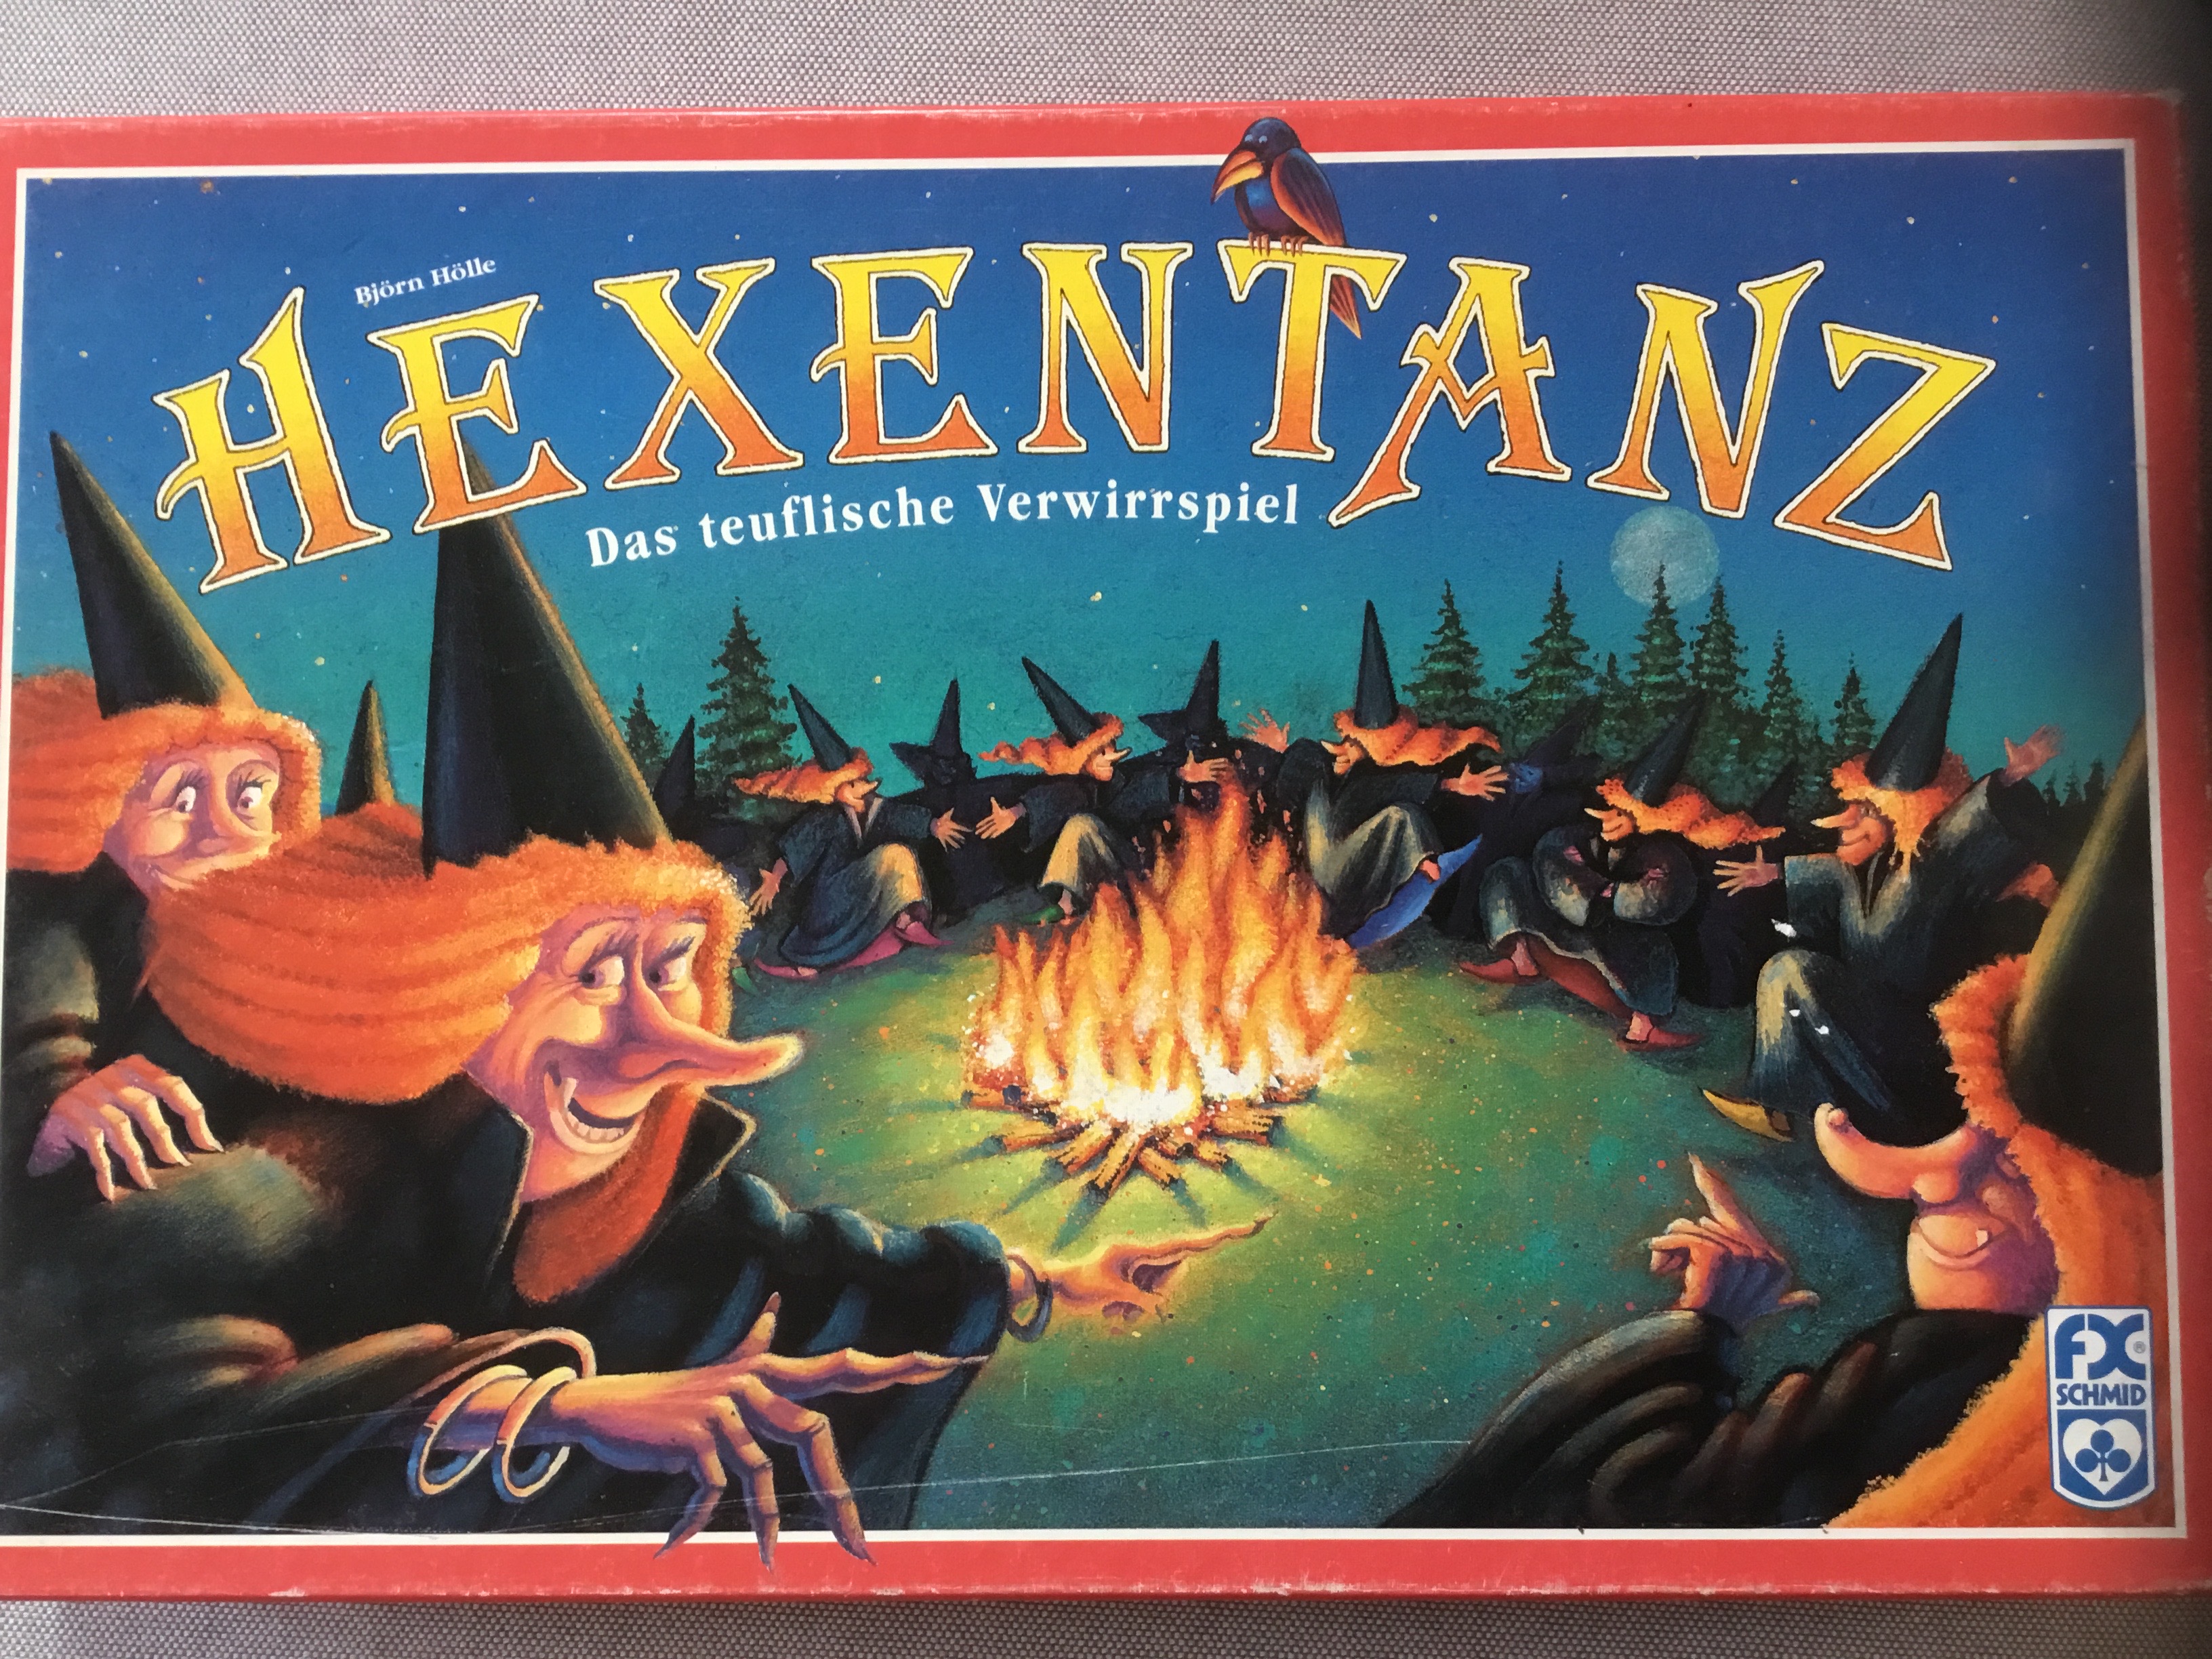 Hexentanz - FX Schmid